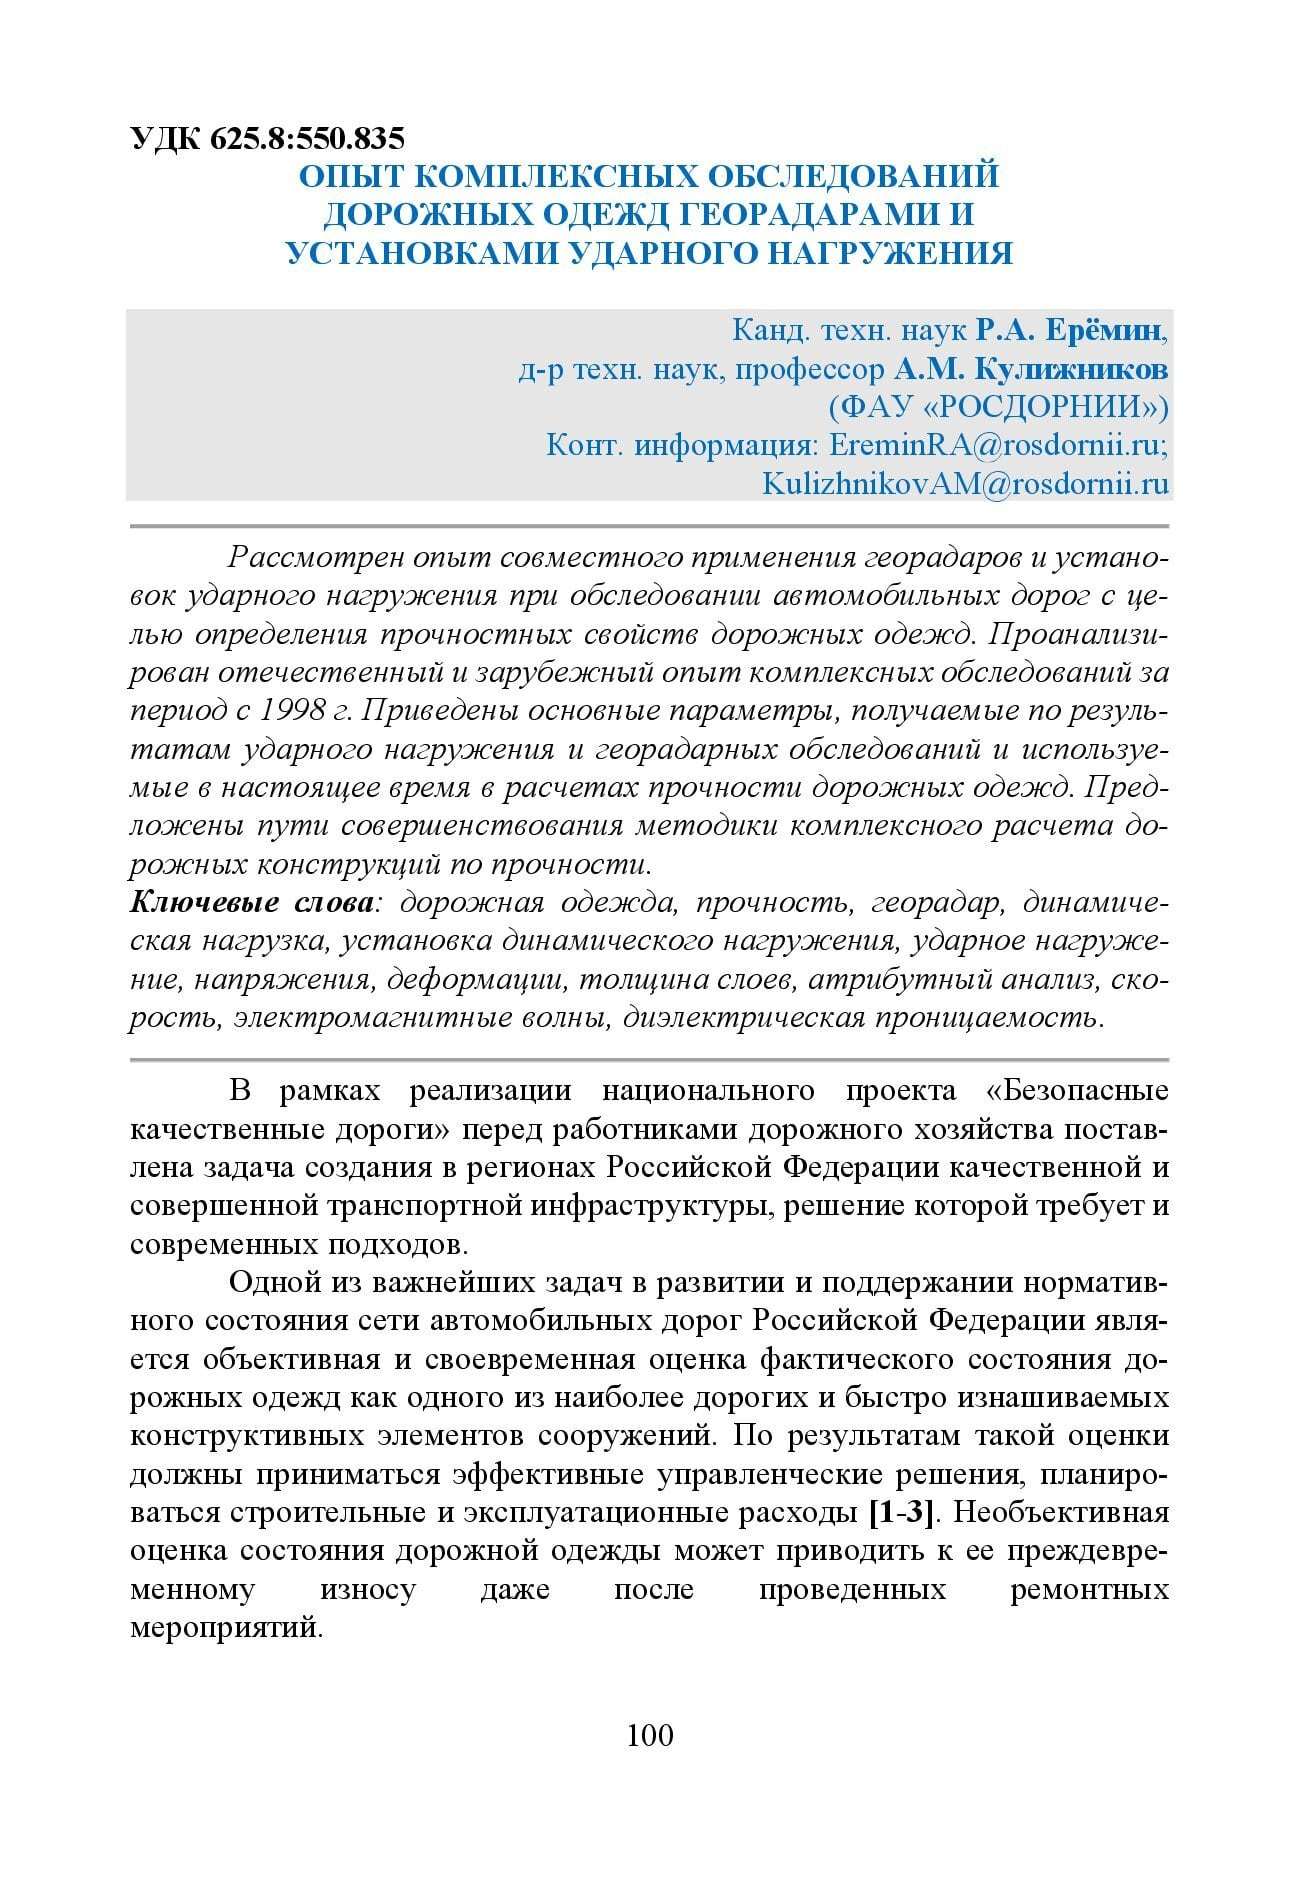 GPR & FWD - выпуск 46 журнал Дороги и мосты_с.100